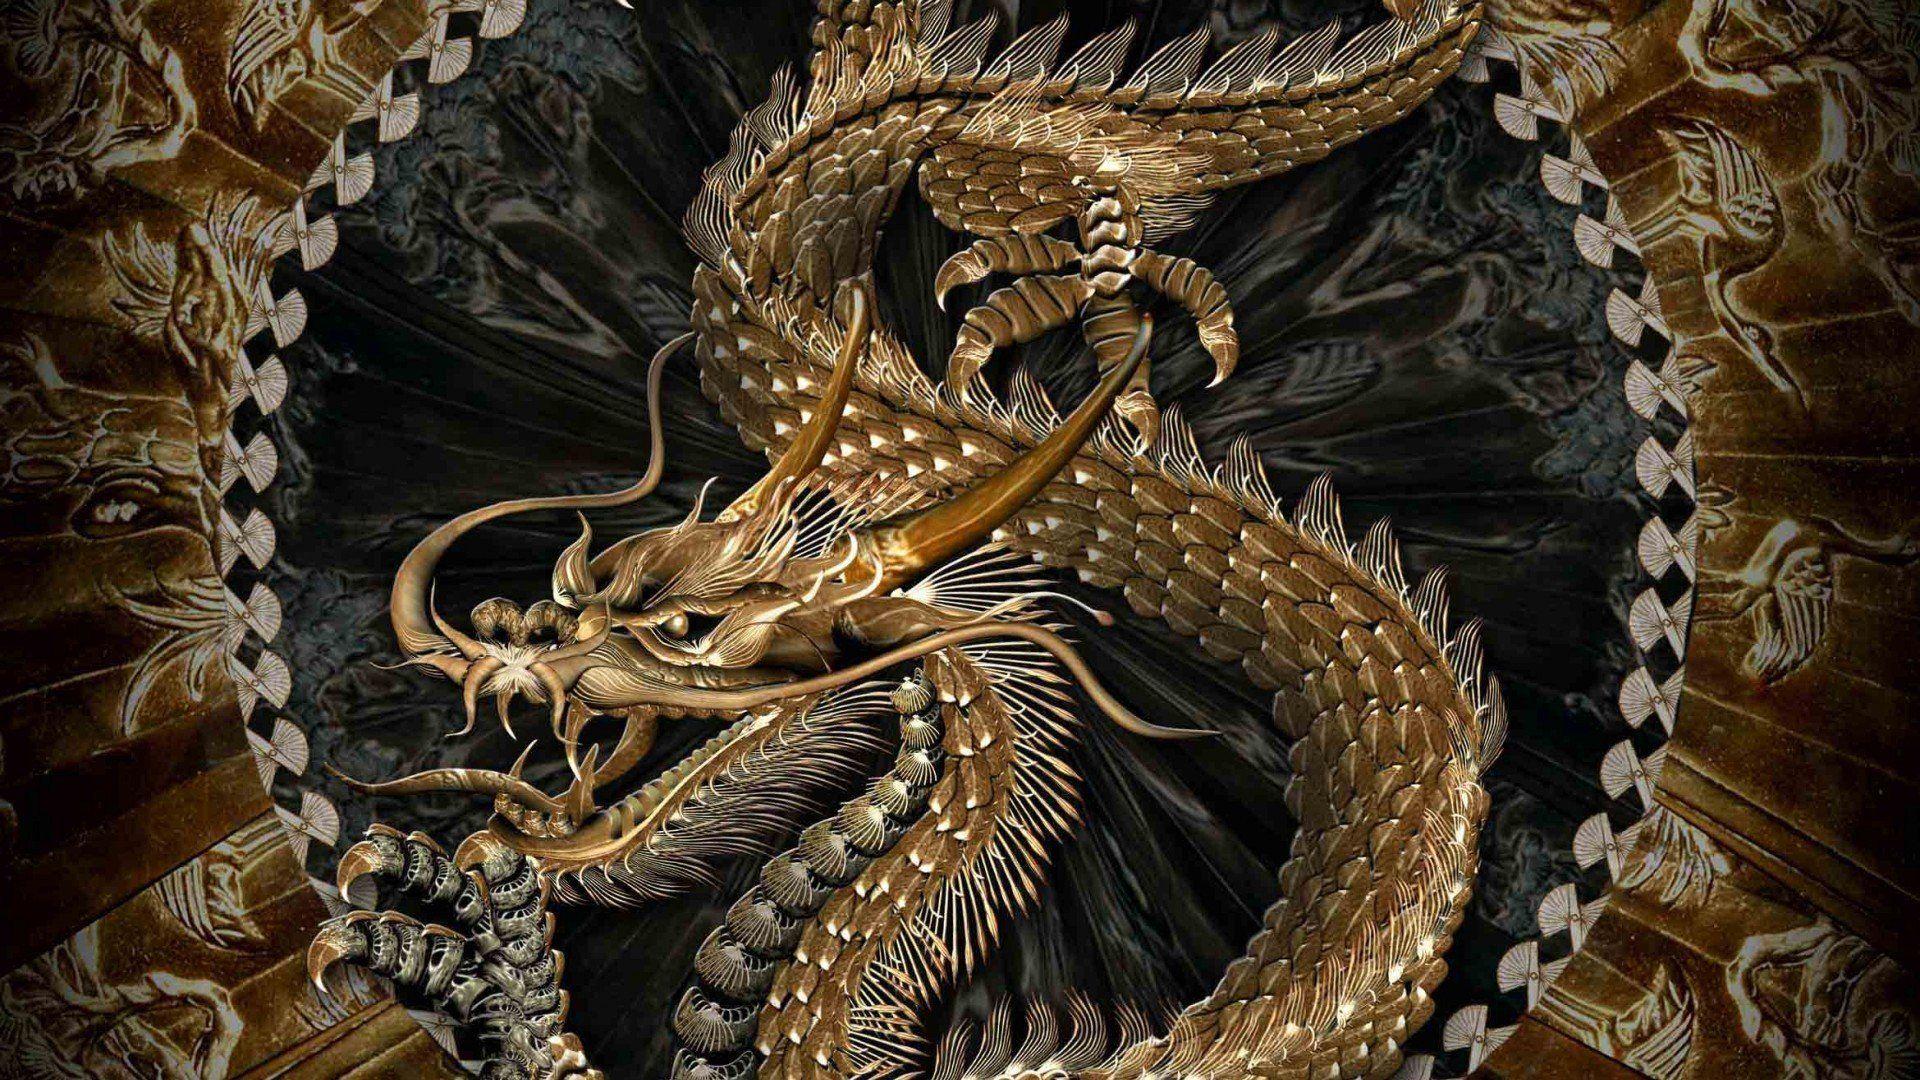 Dragons Fantasy Art Artwork Chinese Dragon Wallpaper At Fantasy